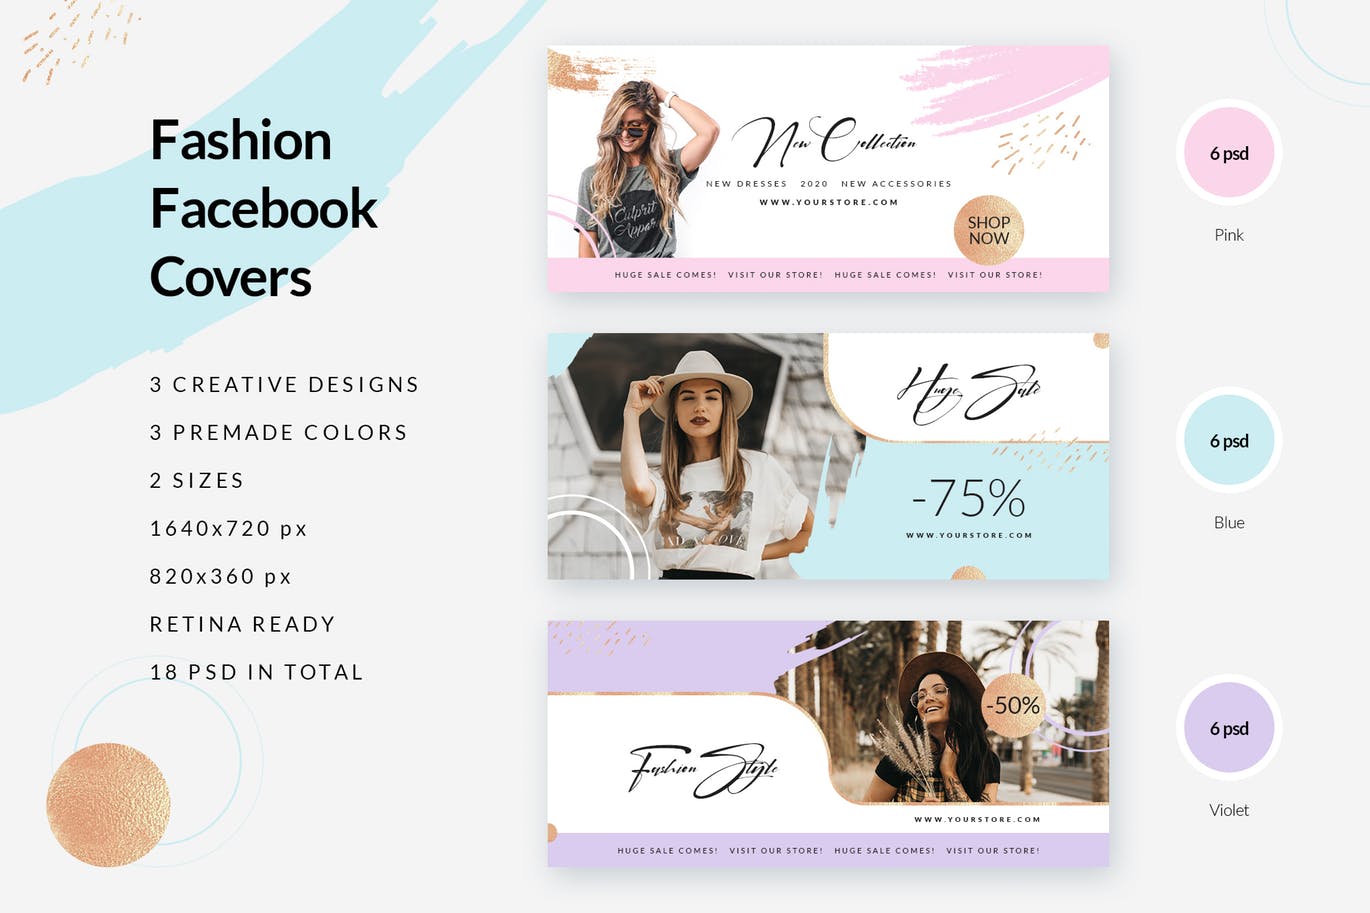 时尚品牌打折促销Facebook封面设计模板第一素材精选 Fashion Facebook Covers插图